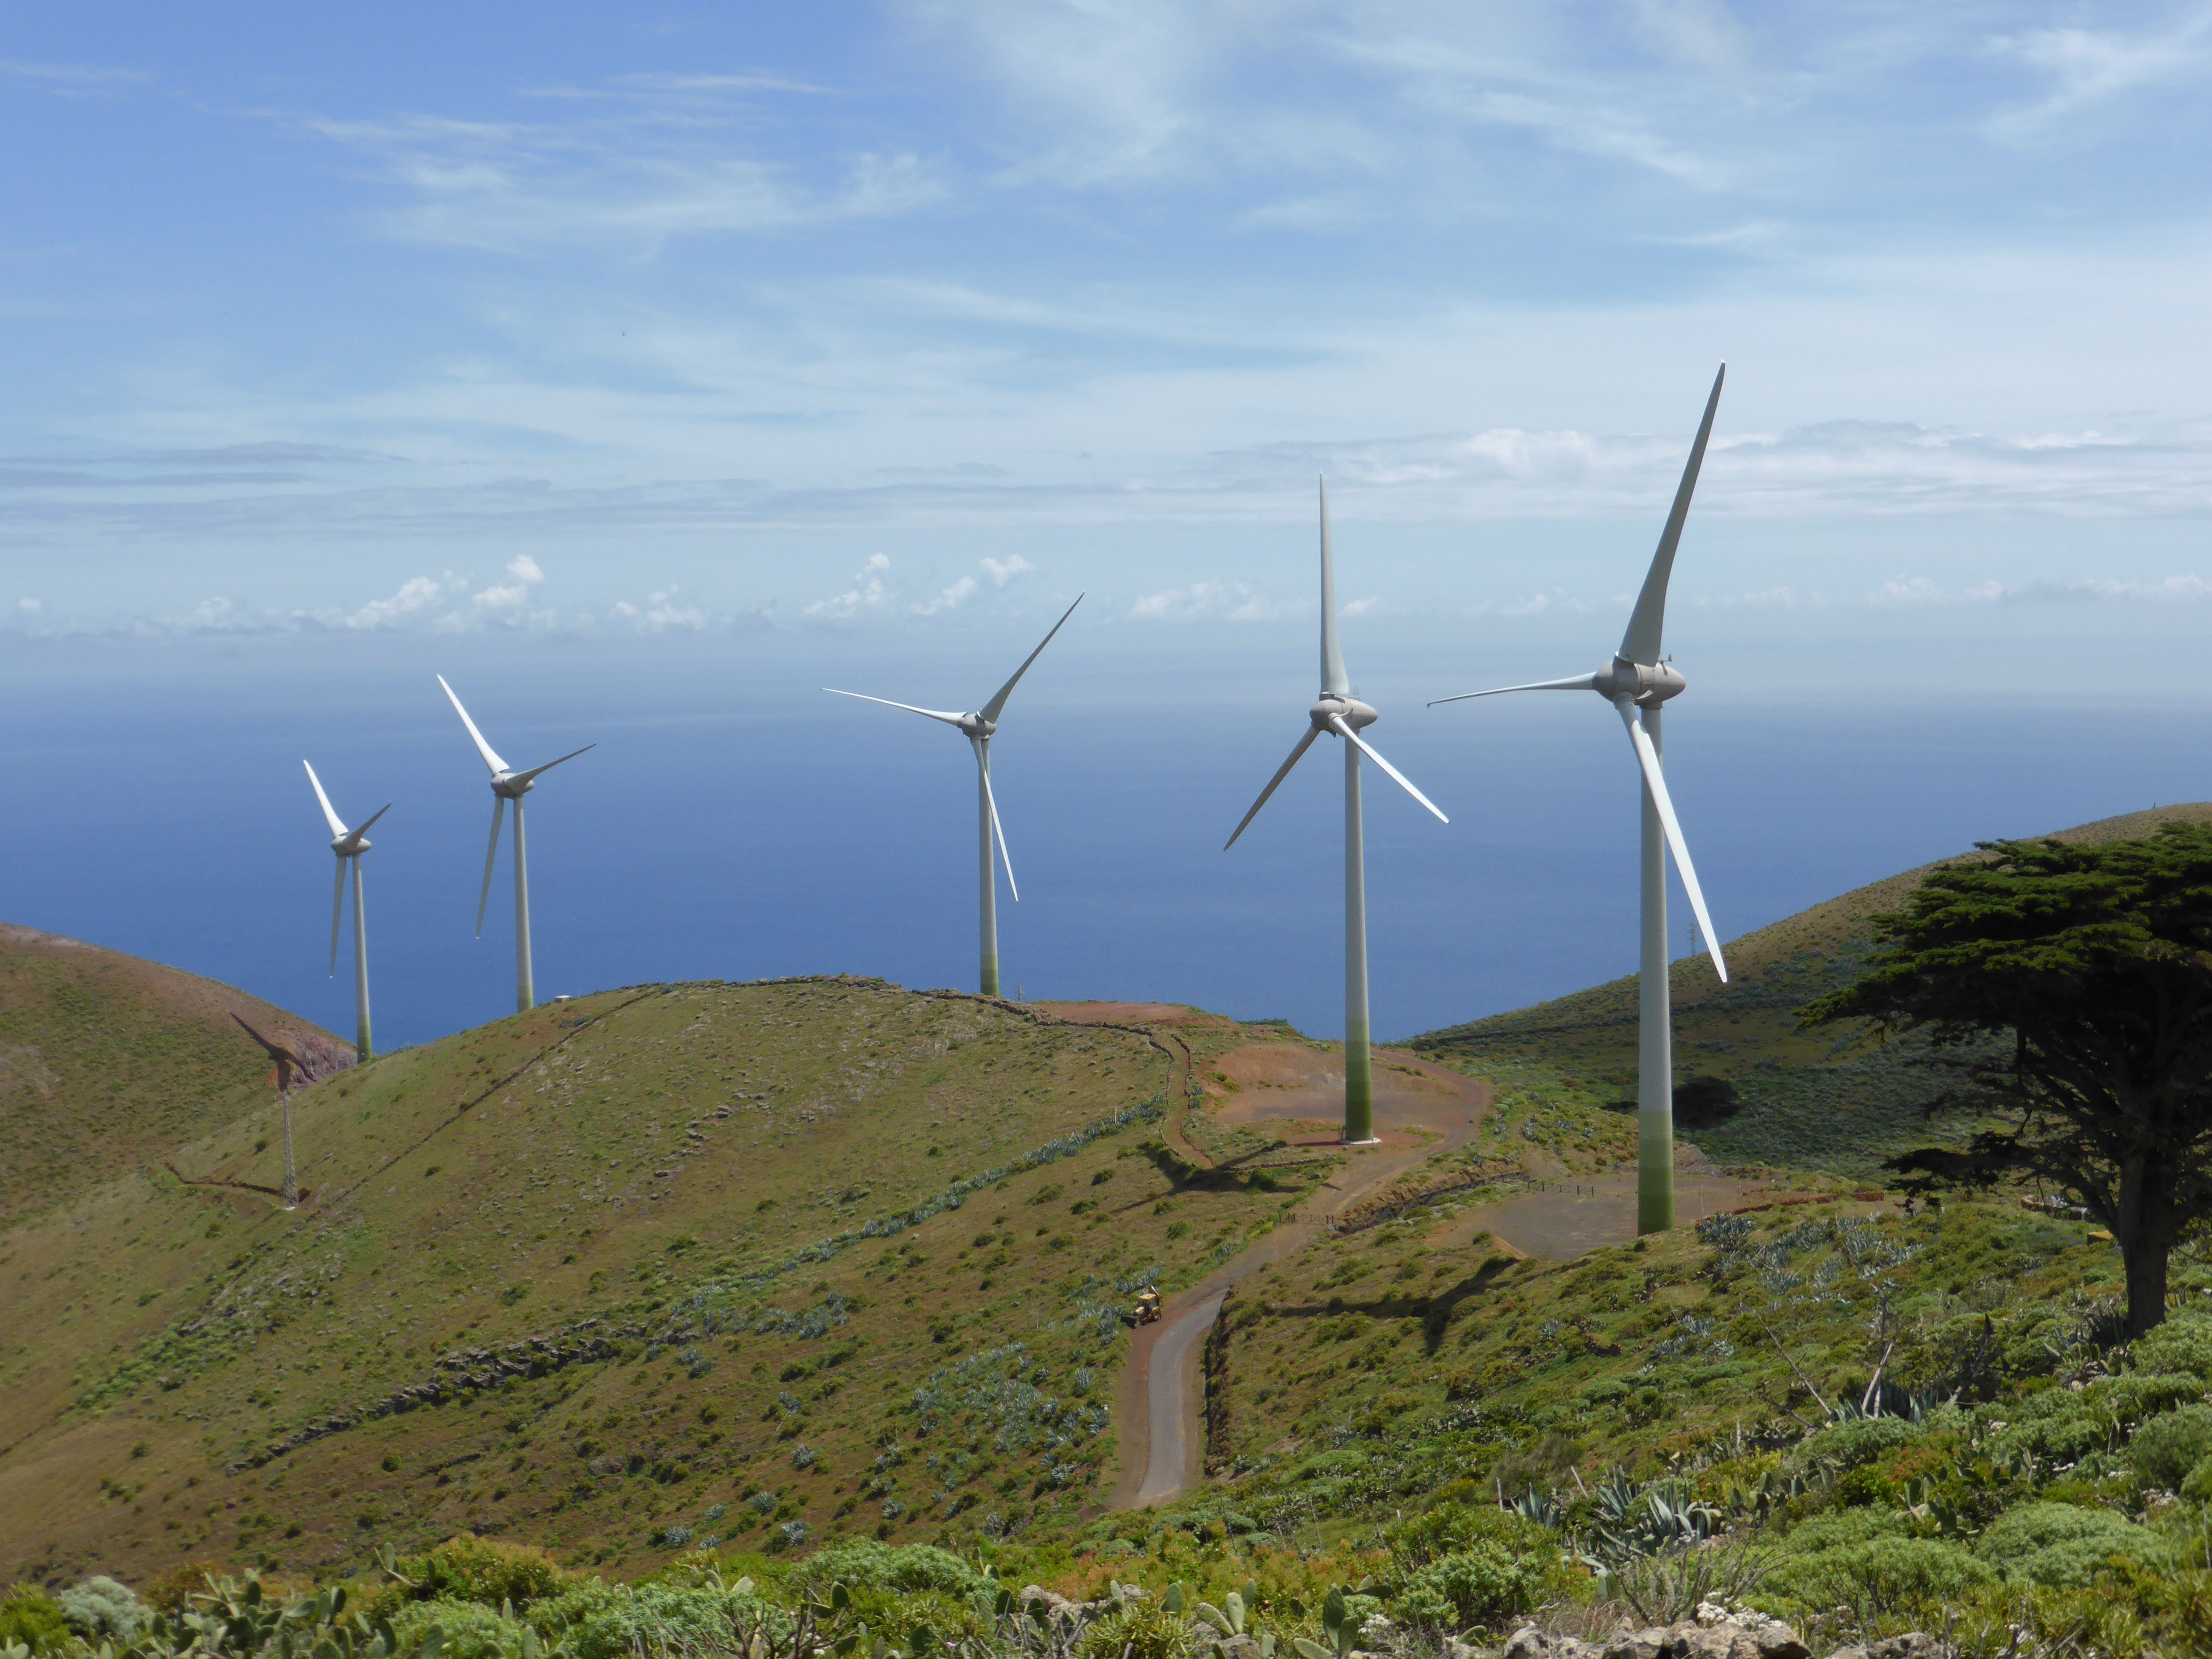 Parque eólico de la isla de El Hierro, Canarias, España. Transición energética / Foto: Wikimedia Commons